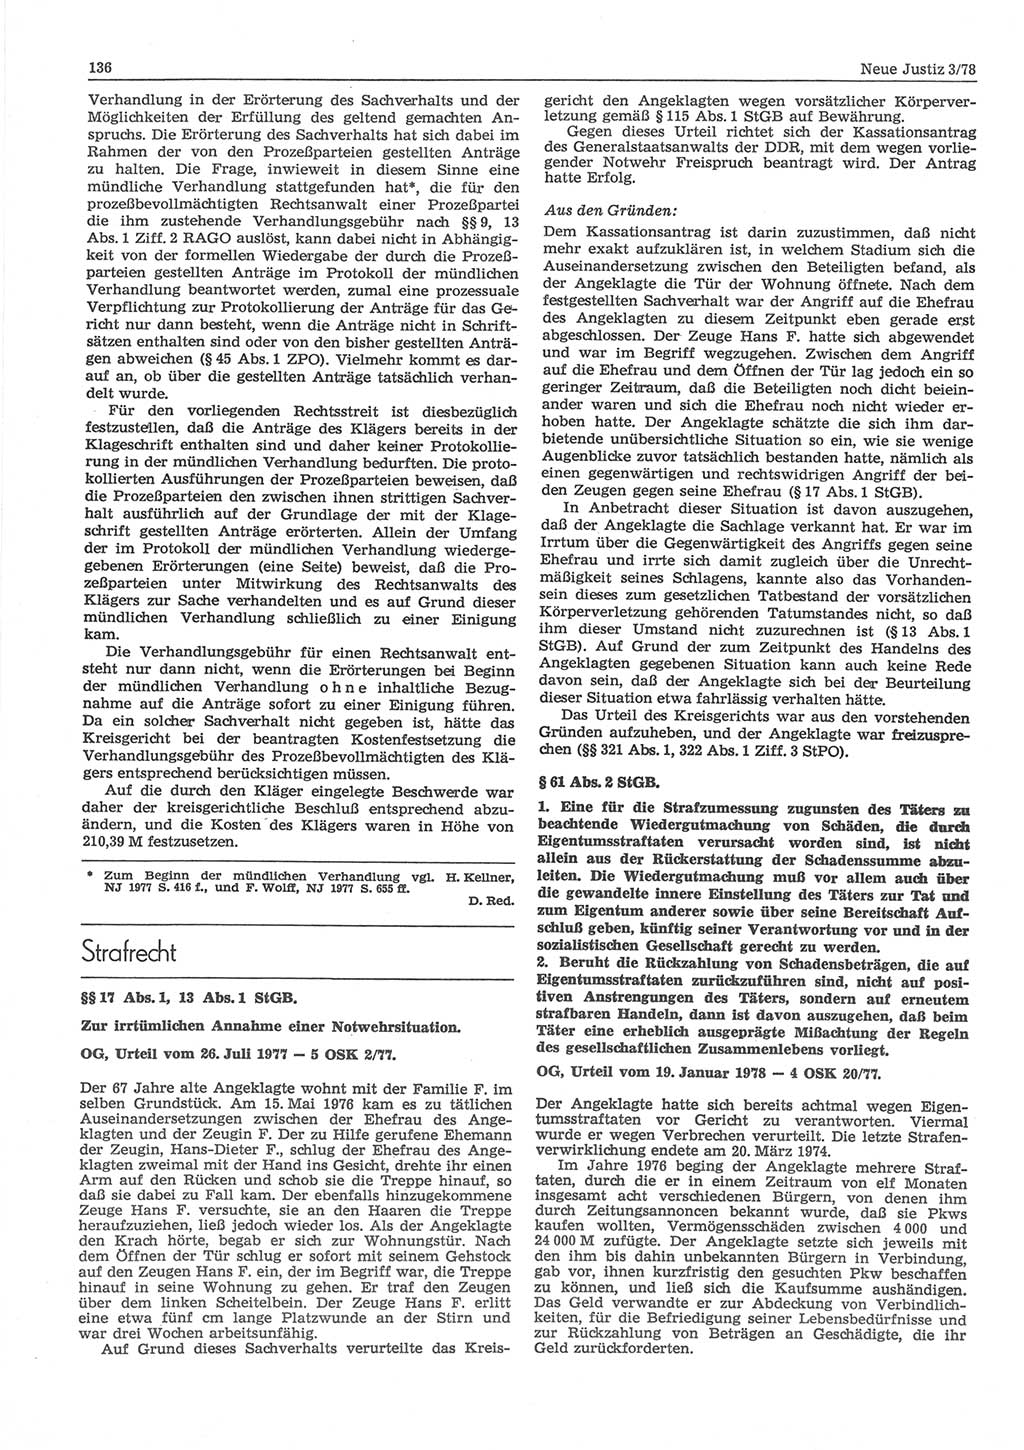 Neue Justiz (NJ), Zeitschrift für sozialistisches Recht und Gesetzlichkeit [Deutsche Demokratische Republik (DDR)], 32. Jahrgang 1978, Seite 136 (NJ DDR 1978, S. 136)